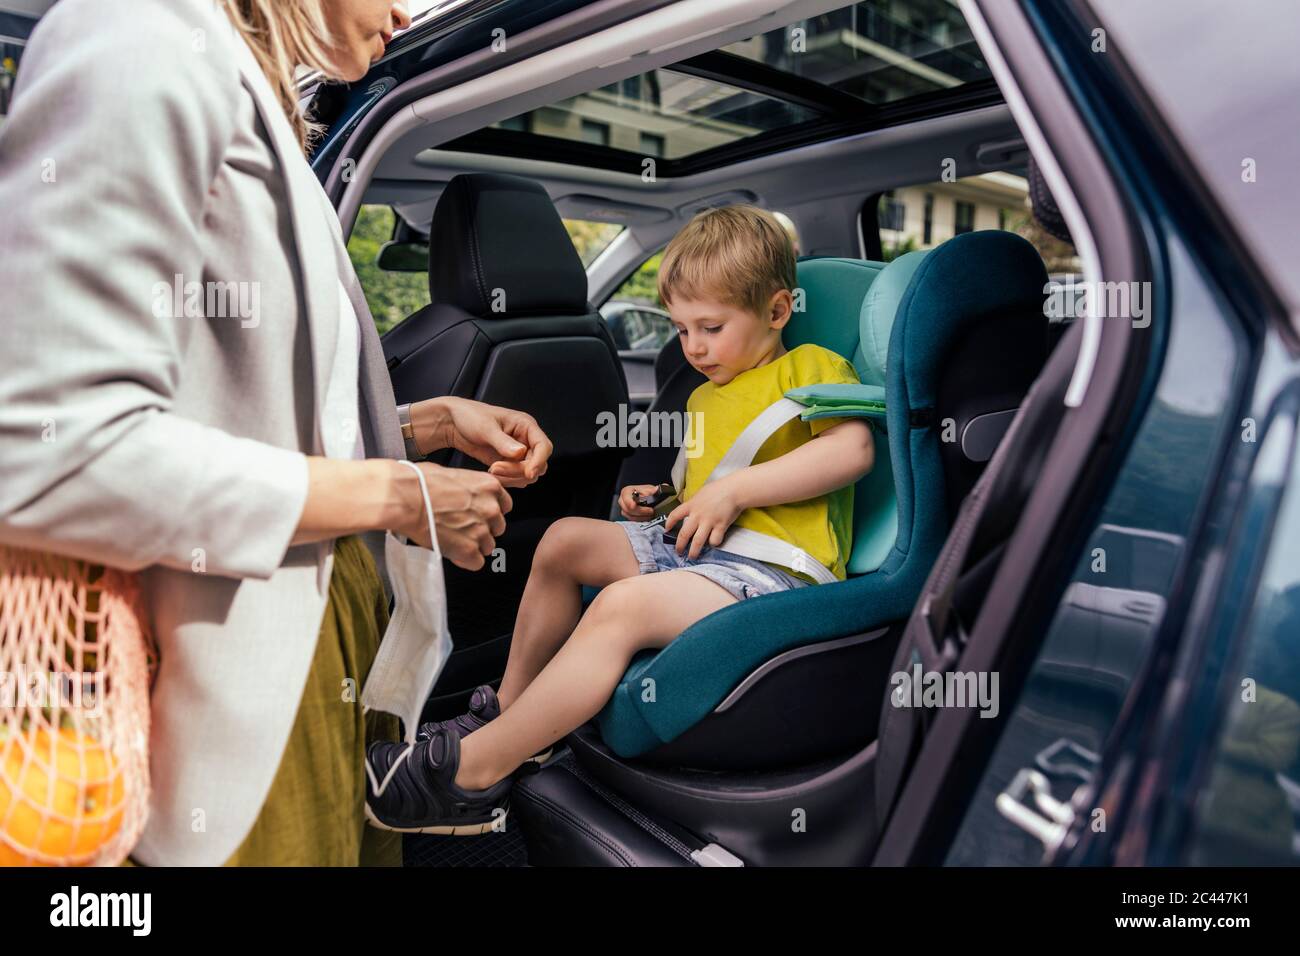 Kleiner Junge Befestigung Sitzglocke Kindersitz im Auto, während seine Mutter ihn beobachtet Stockfoto